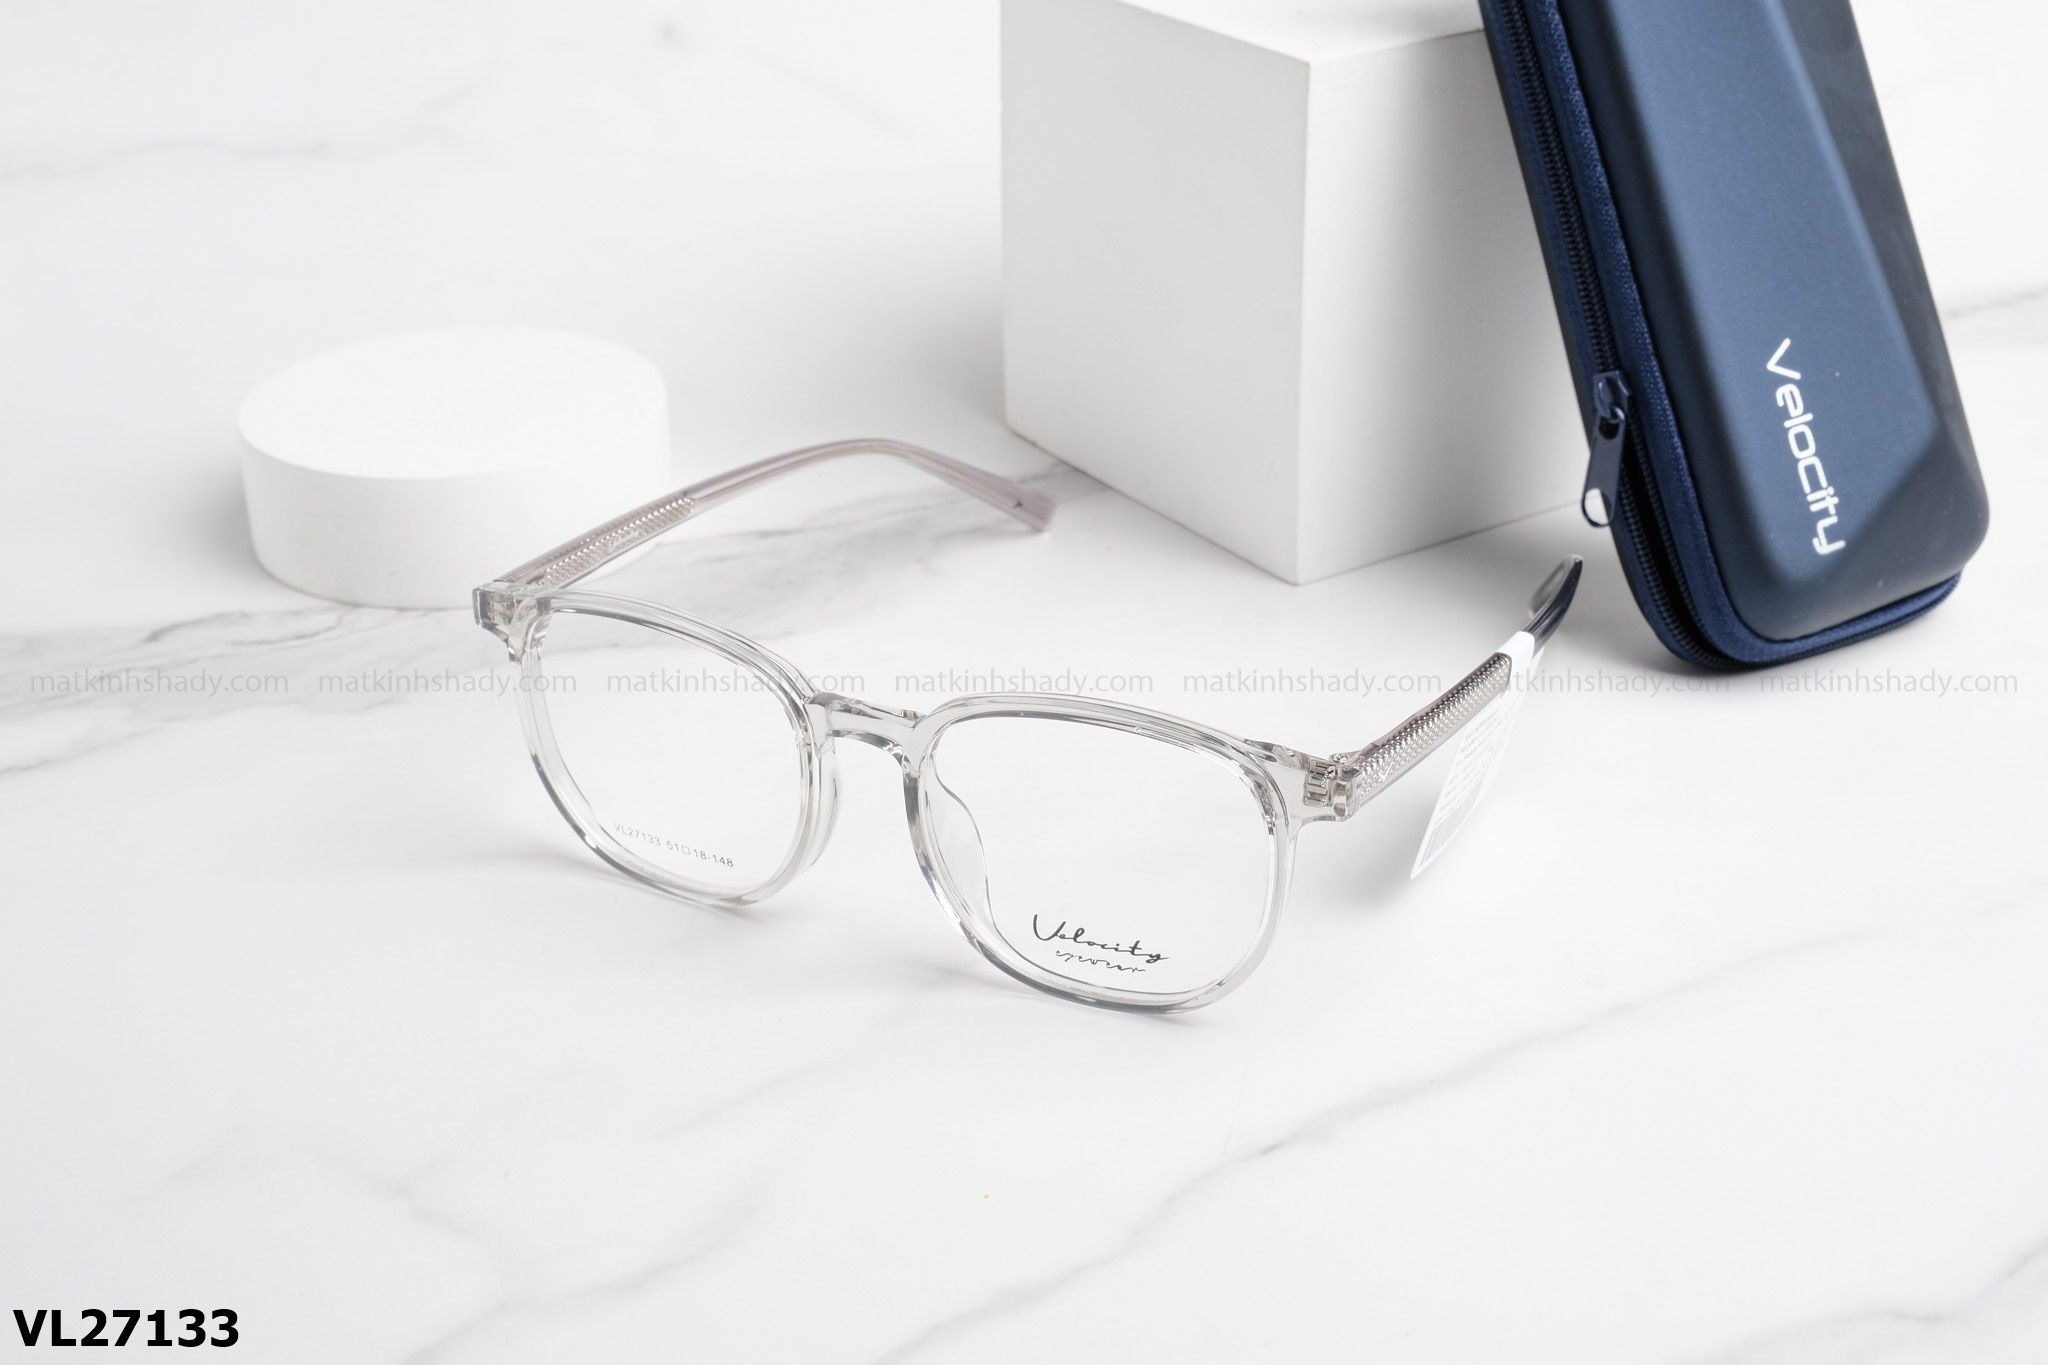  Velocity Eyewear - Glasses - VL27133 